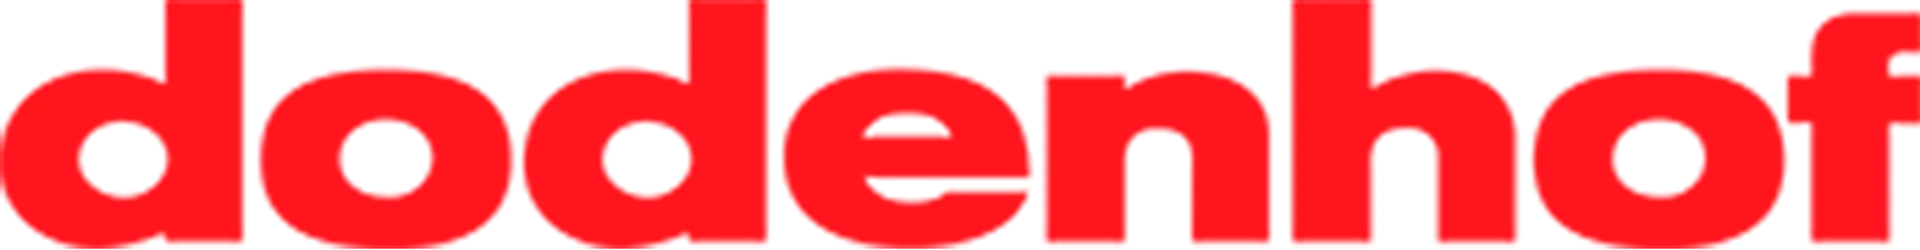 DODENHOF logo die aktuell Prospekt